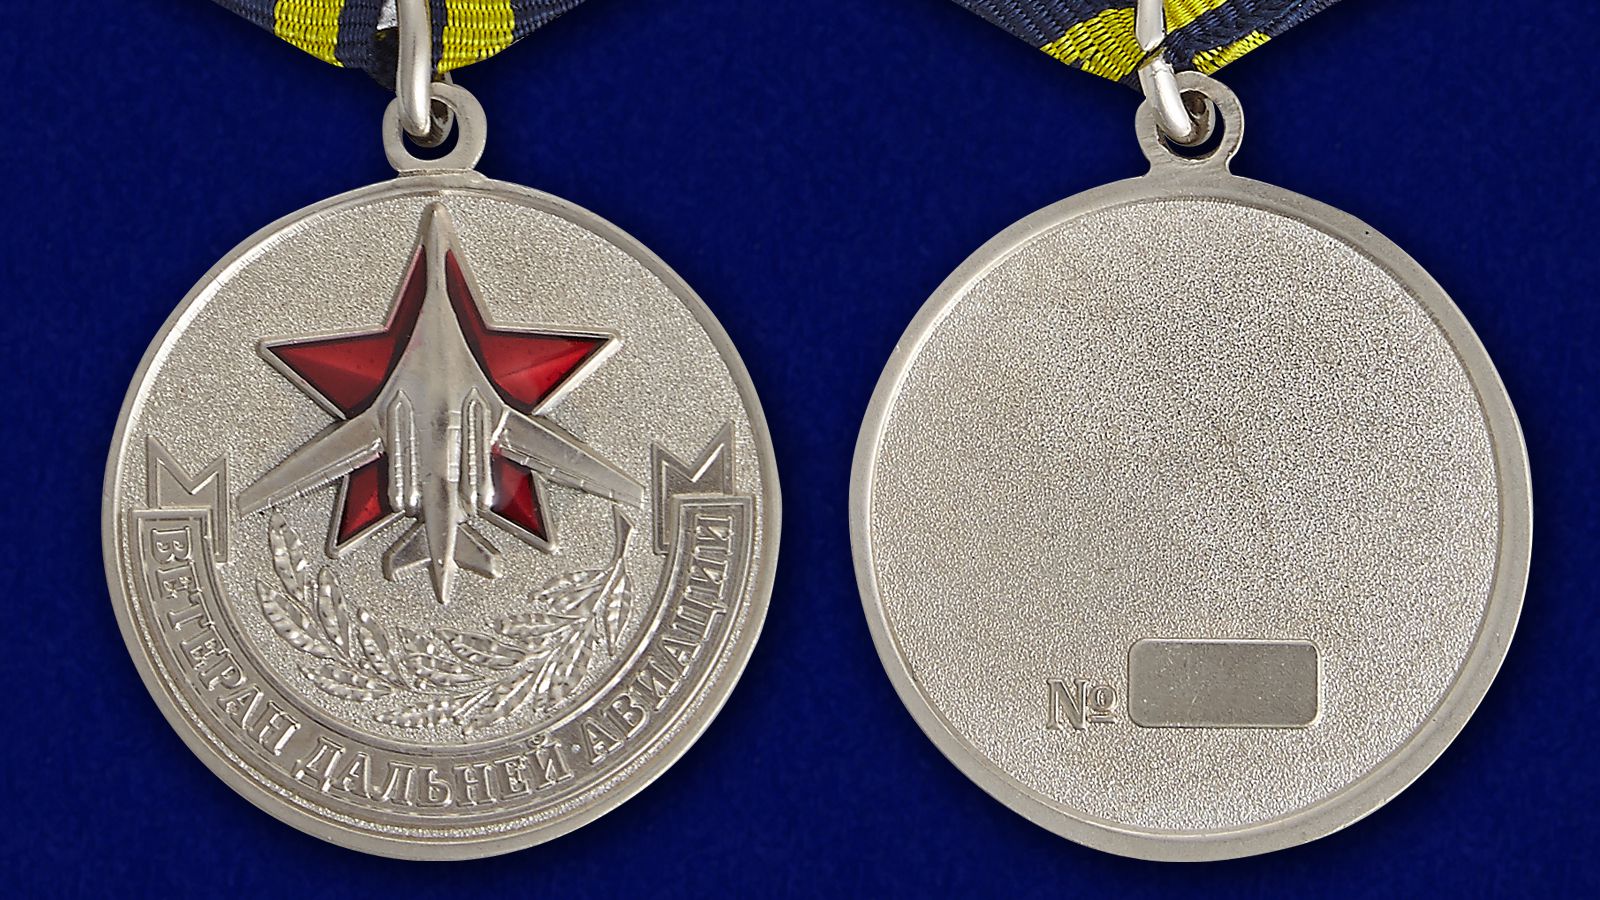 Купить медаль «Ветеран дальней авиации» в футляре в розницу или оптом